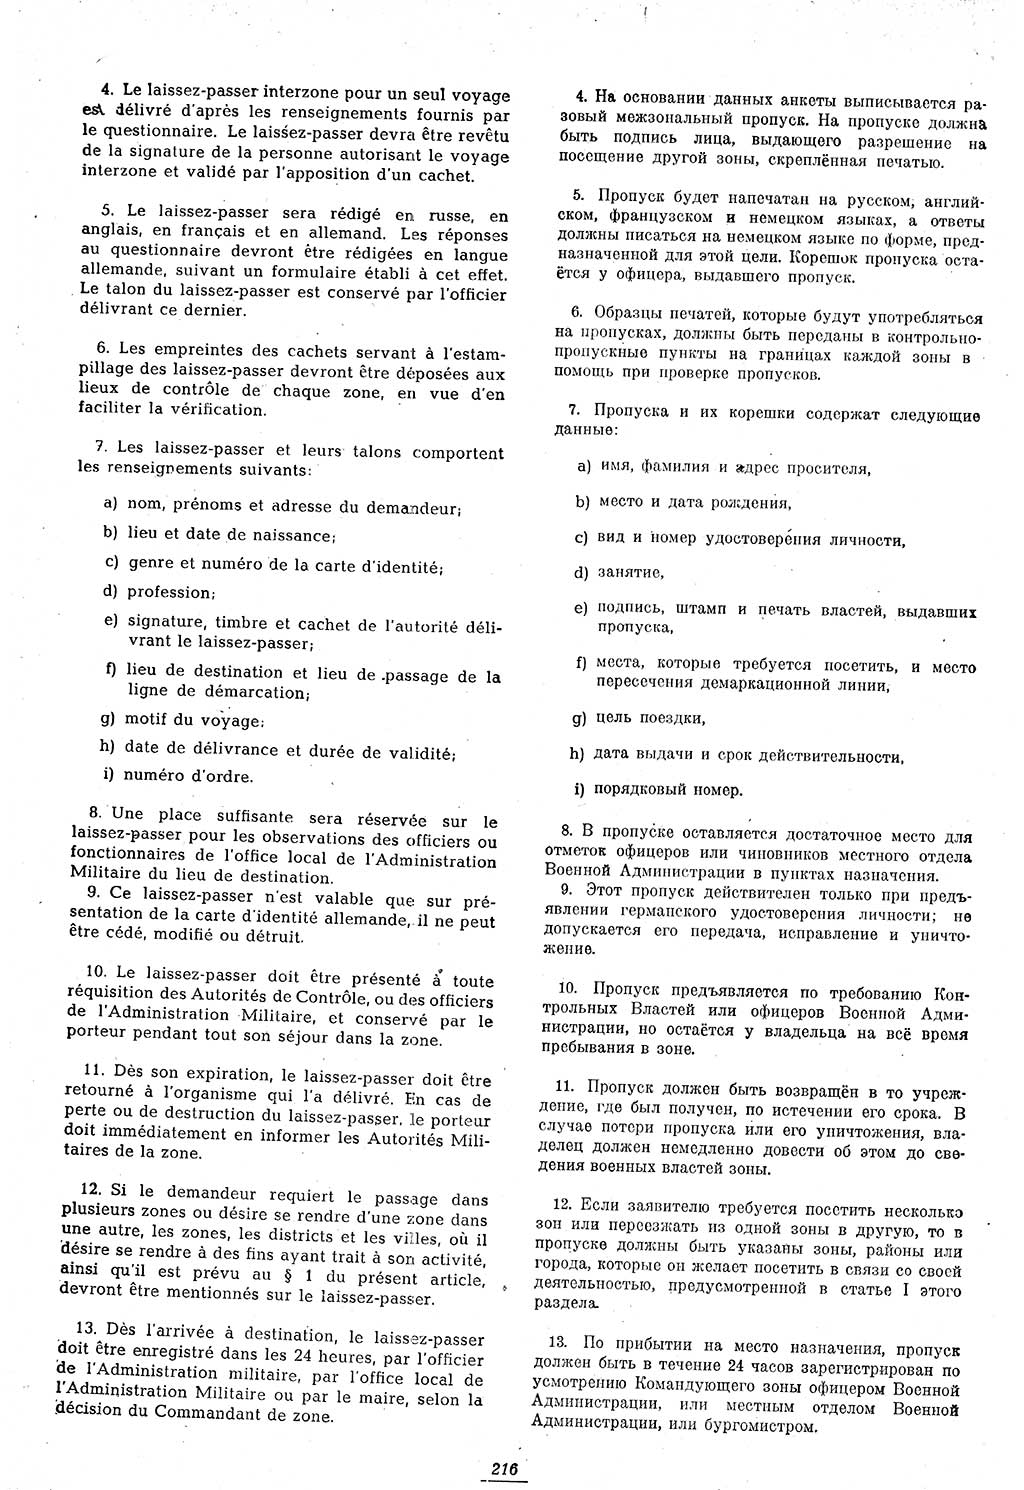 Amtsblatt des Kontrollrats (ABlKR) in Deutschland 1946, Seite 216/1 (ABlKR Dtl. 1946, S. 216/1)